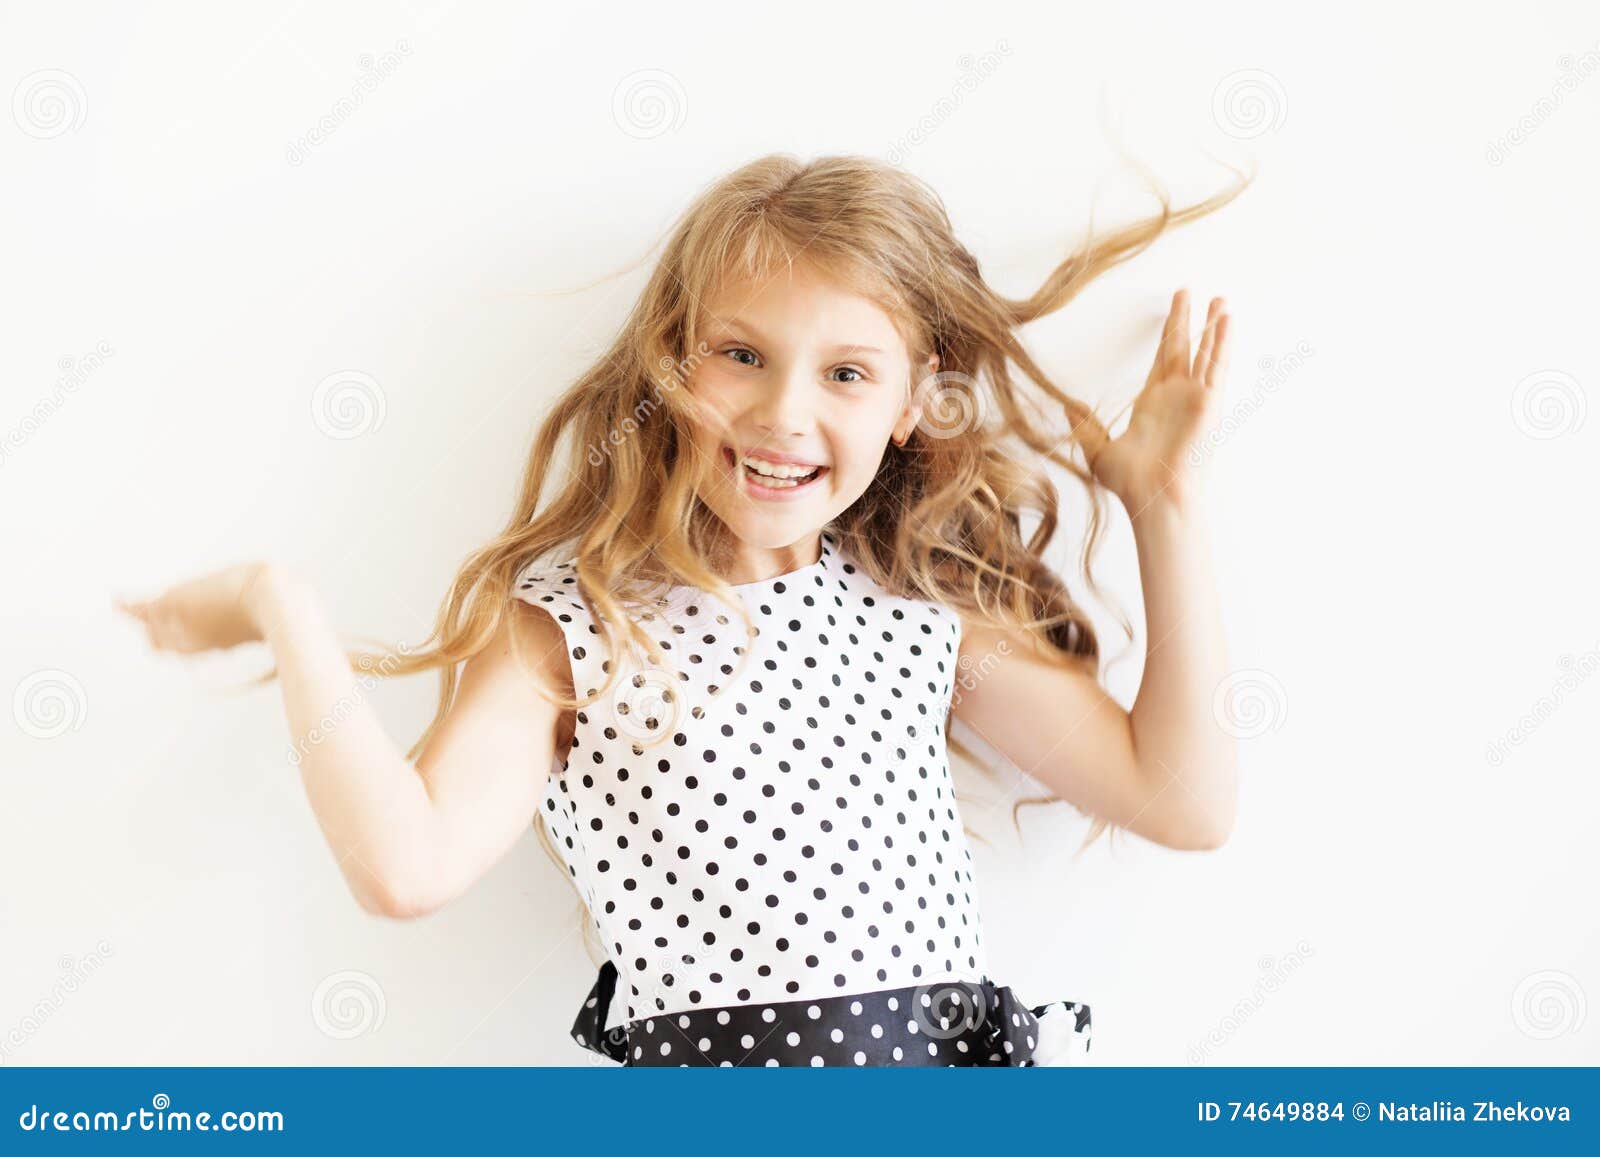 lovely frisky little girl in a polka-dot dress against a white b